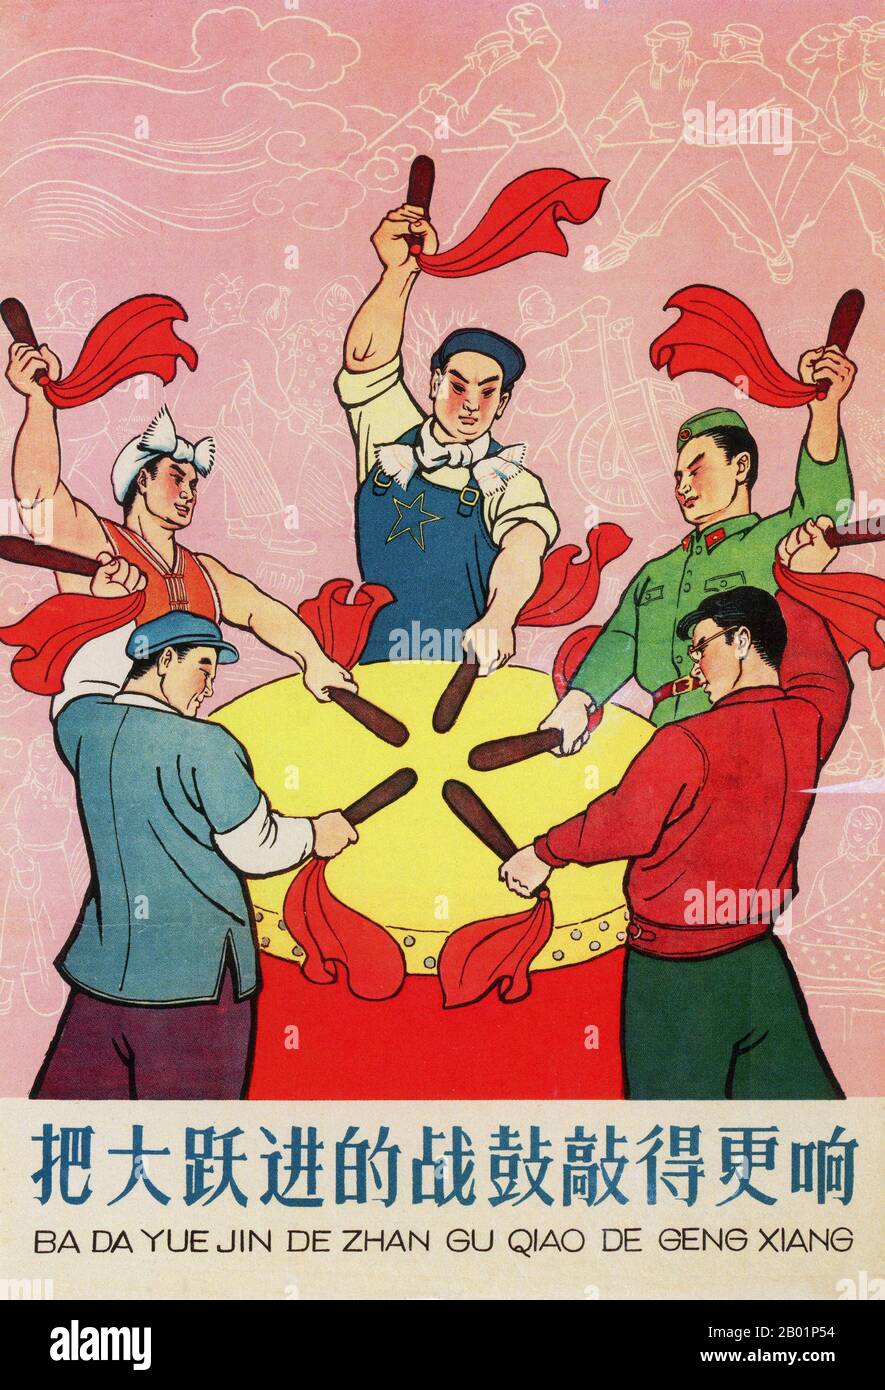 Chine : 'frappez le tambour de combat du Grand bond en avant toujours plus fort!' Affiche de propagande du Grand bond en avant (1958-1961) de Shao Wenjin, 1959. Le Grand bond en avant de la République populaire de Chine (RPC) était une campagne économique et sociale du Parti communiste chinois (PCC), reflétée dans les décisions de planification de 1958 à 1961, qui visait à utiliser la vaste population chinoise pour transformer rapidement le pays d'une économie agraire en une société communiste moderne à travers le processus d'industrialisation rapide et de collectivisation. Banque D'Images